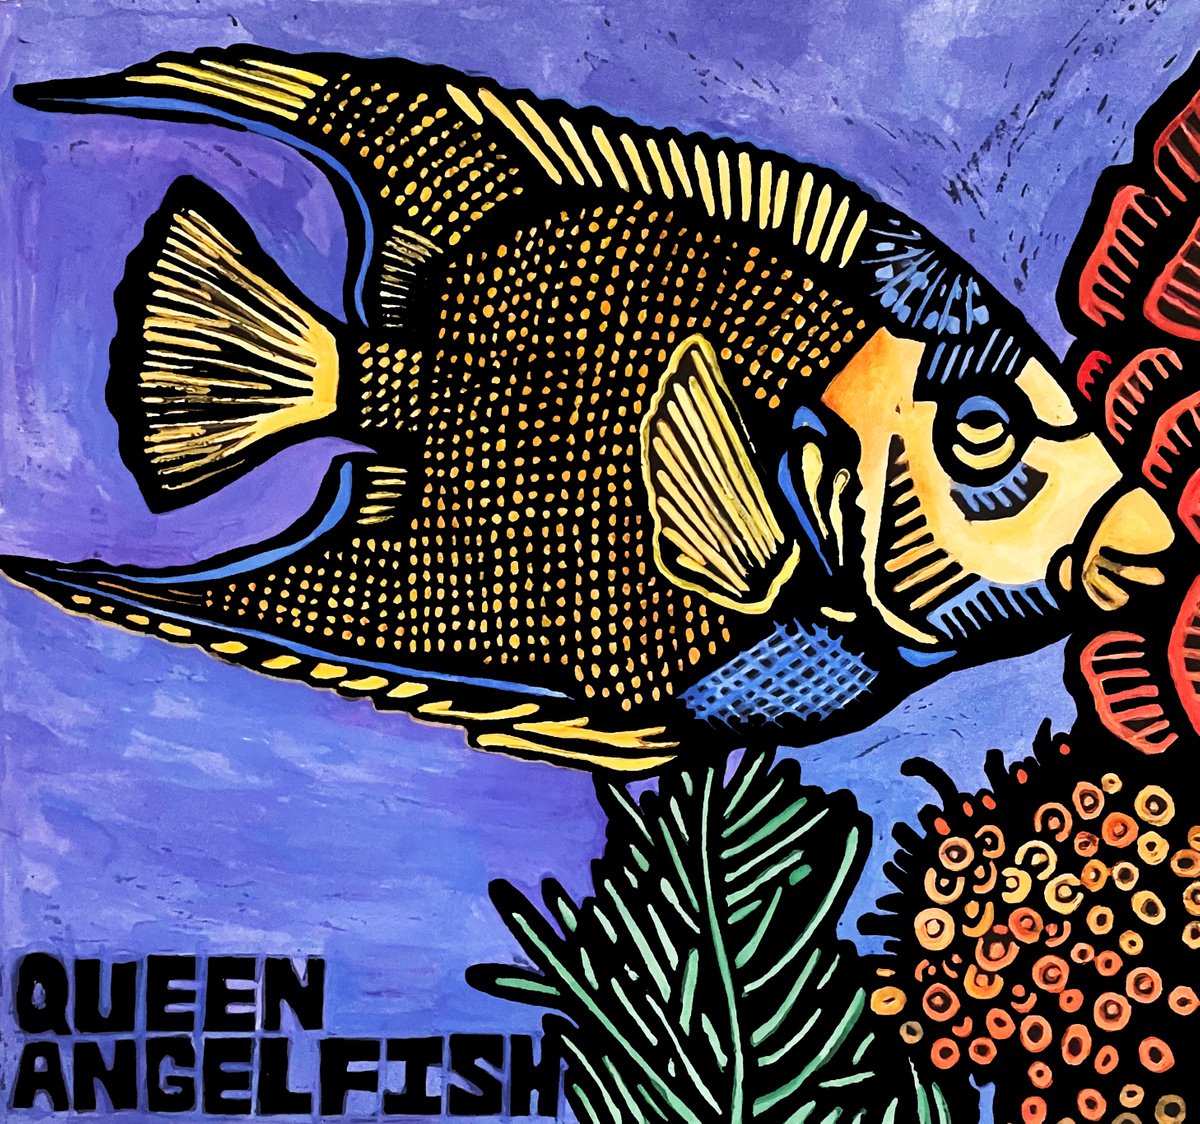 Queen Angelfish by Laurel Macdonald